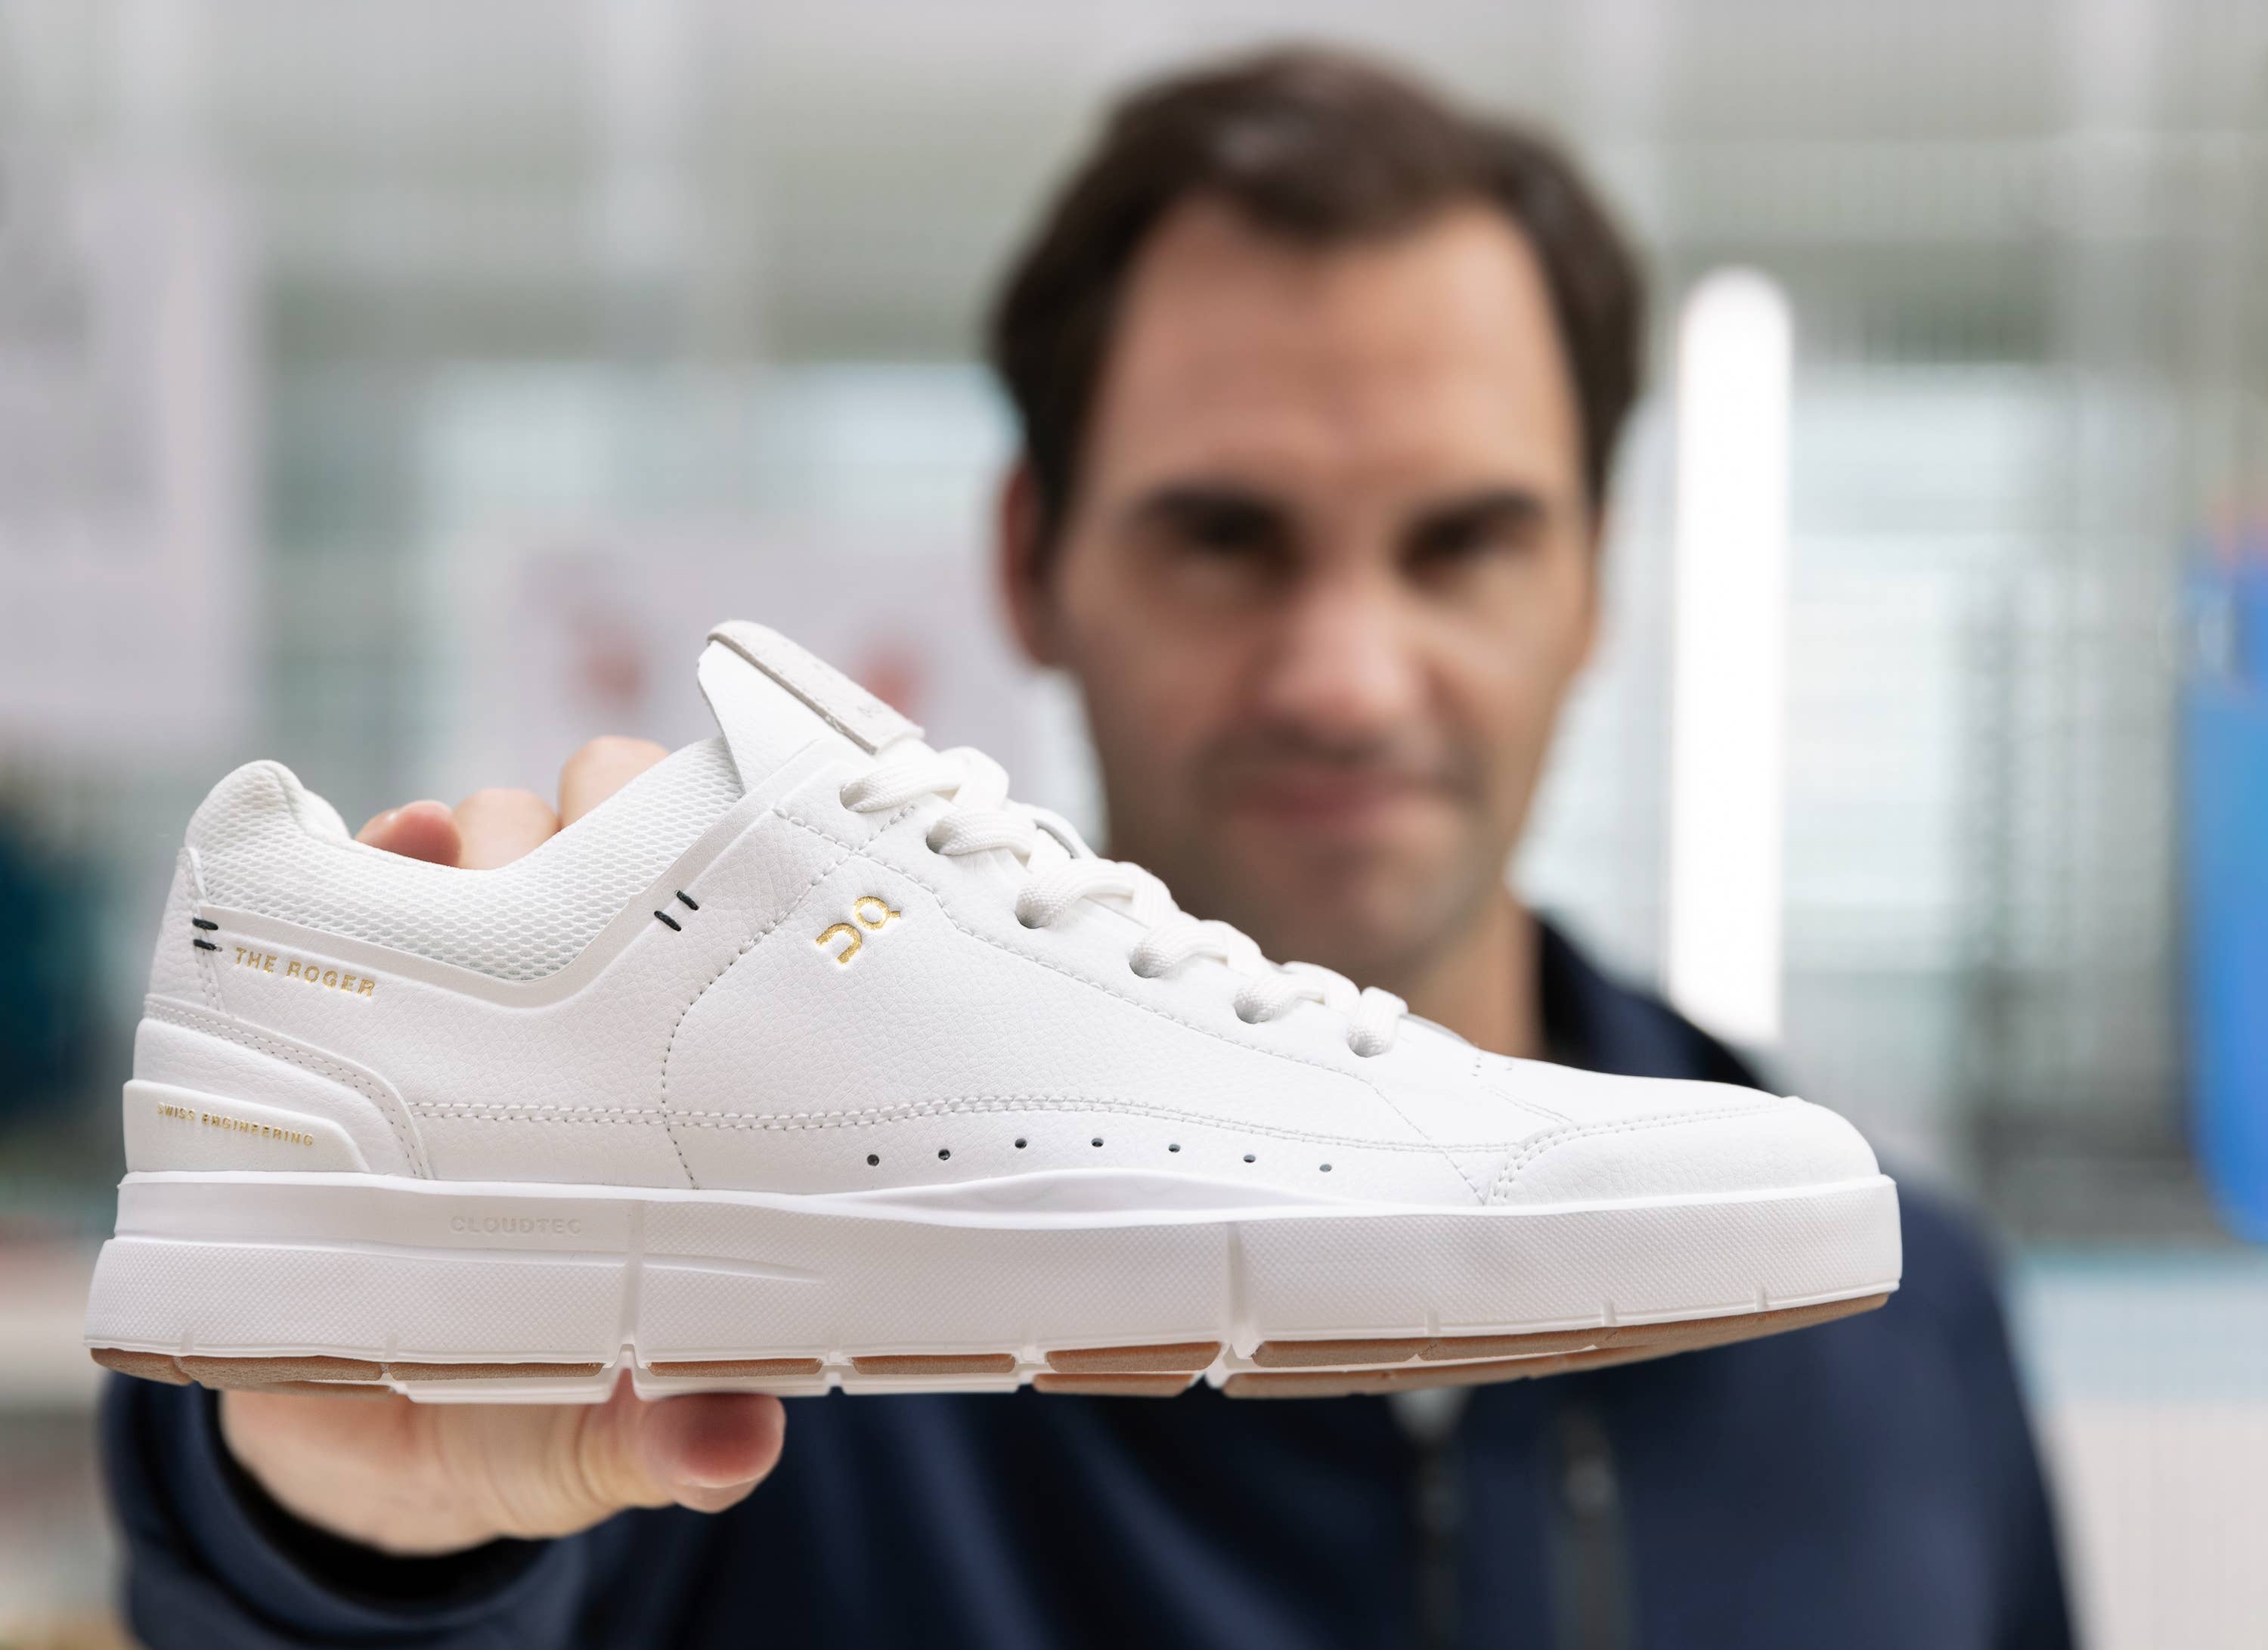 Roger Federer's Sneakers